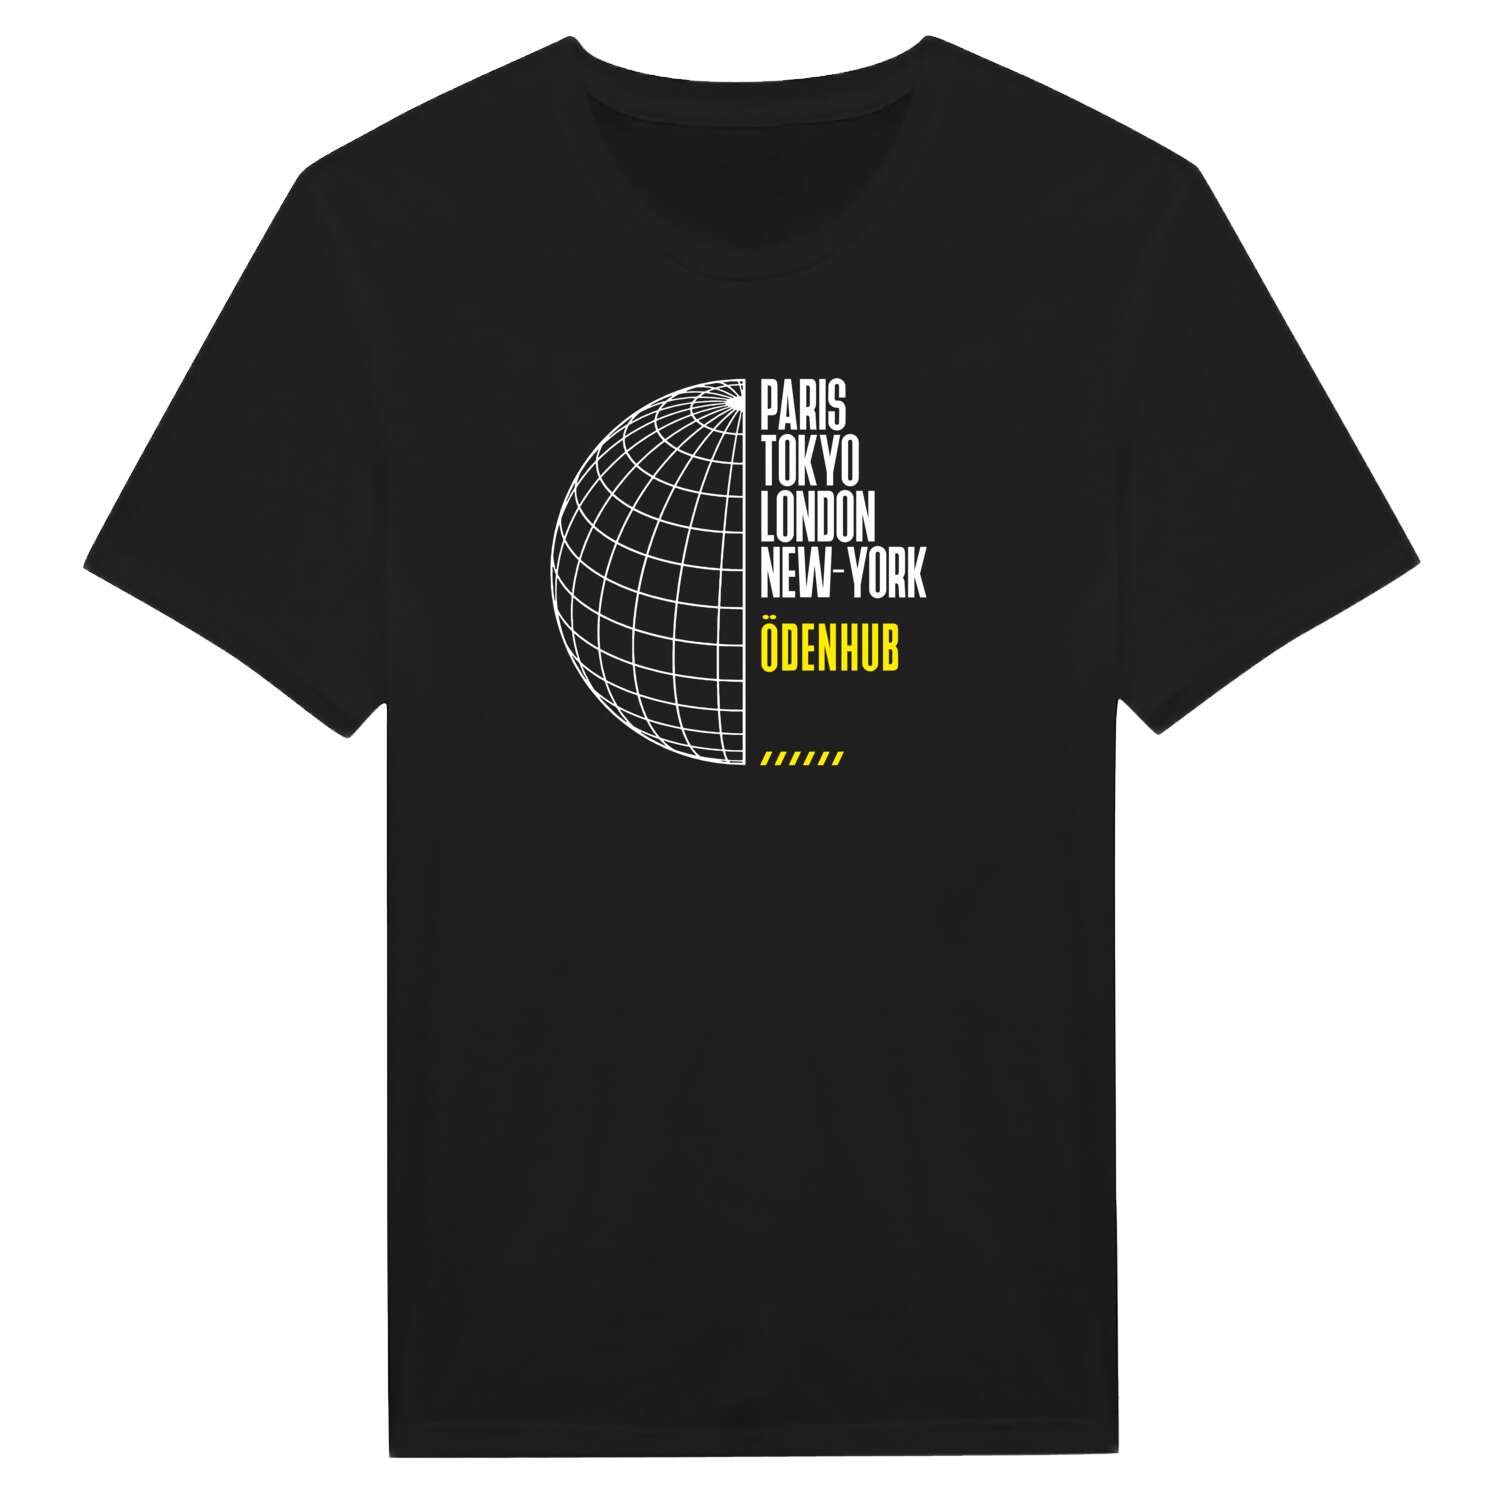 Ödenhub T-Shirt »Paris Tokyo London«